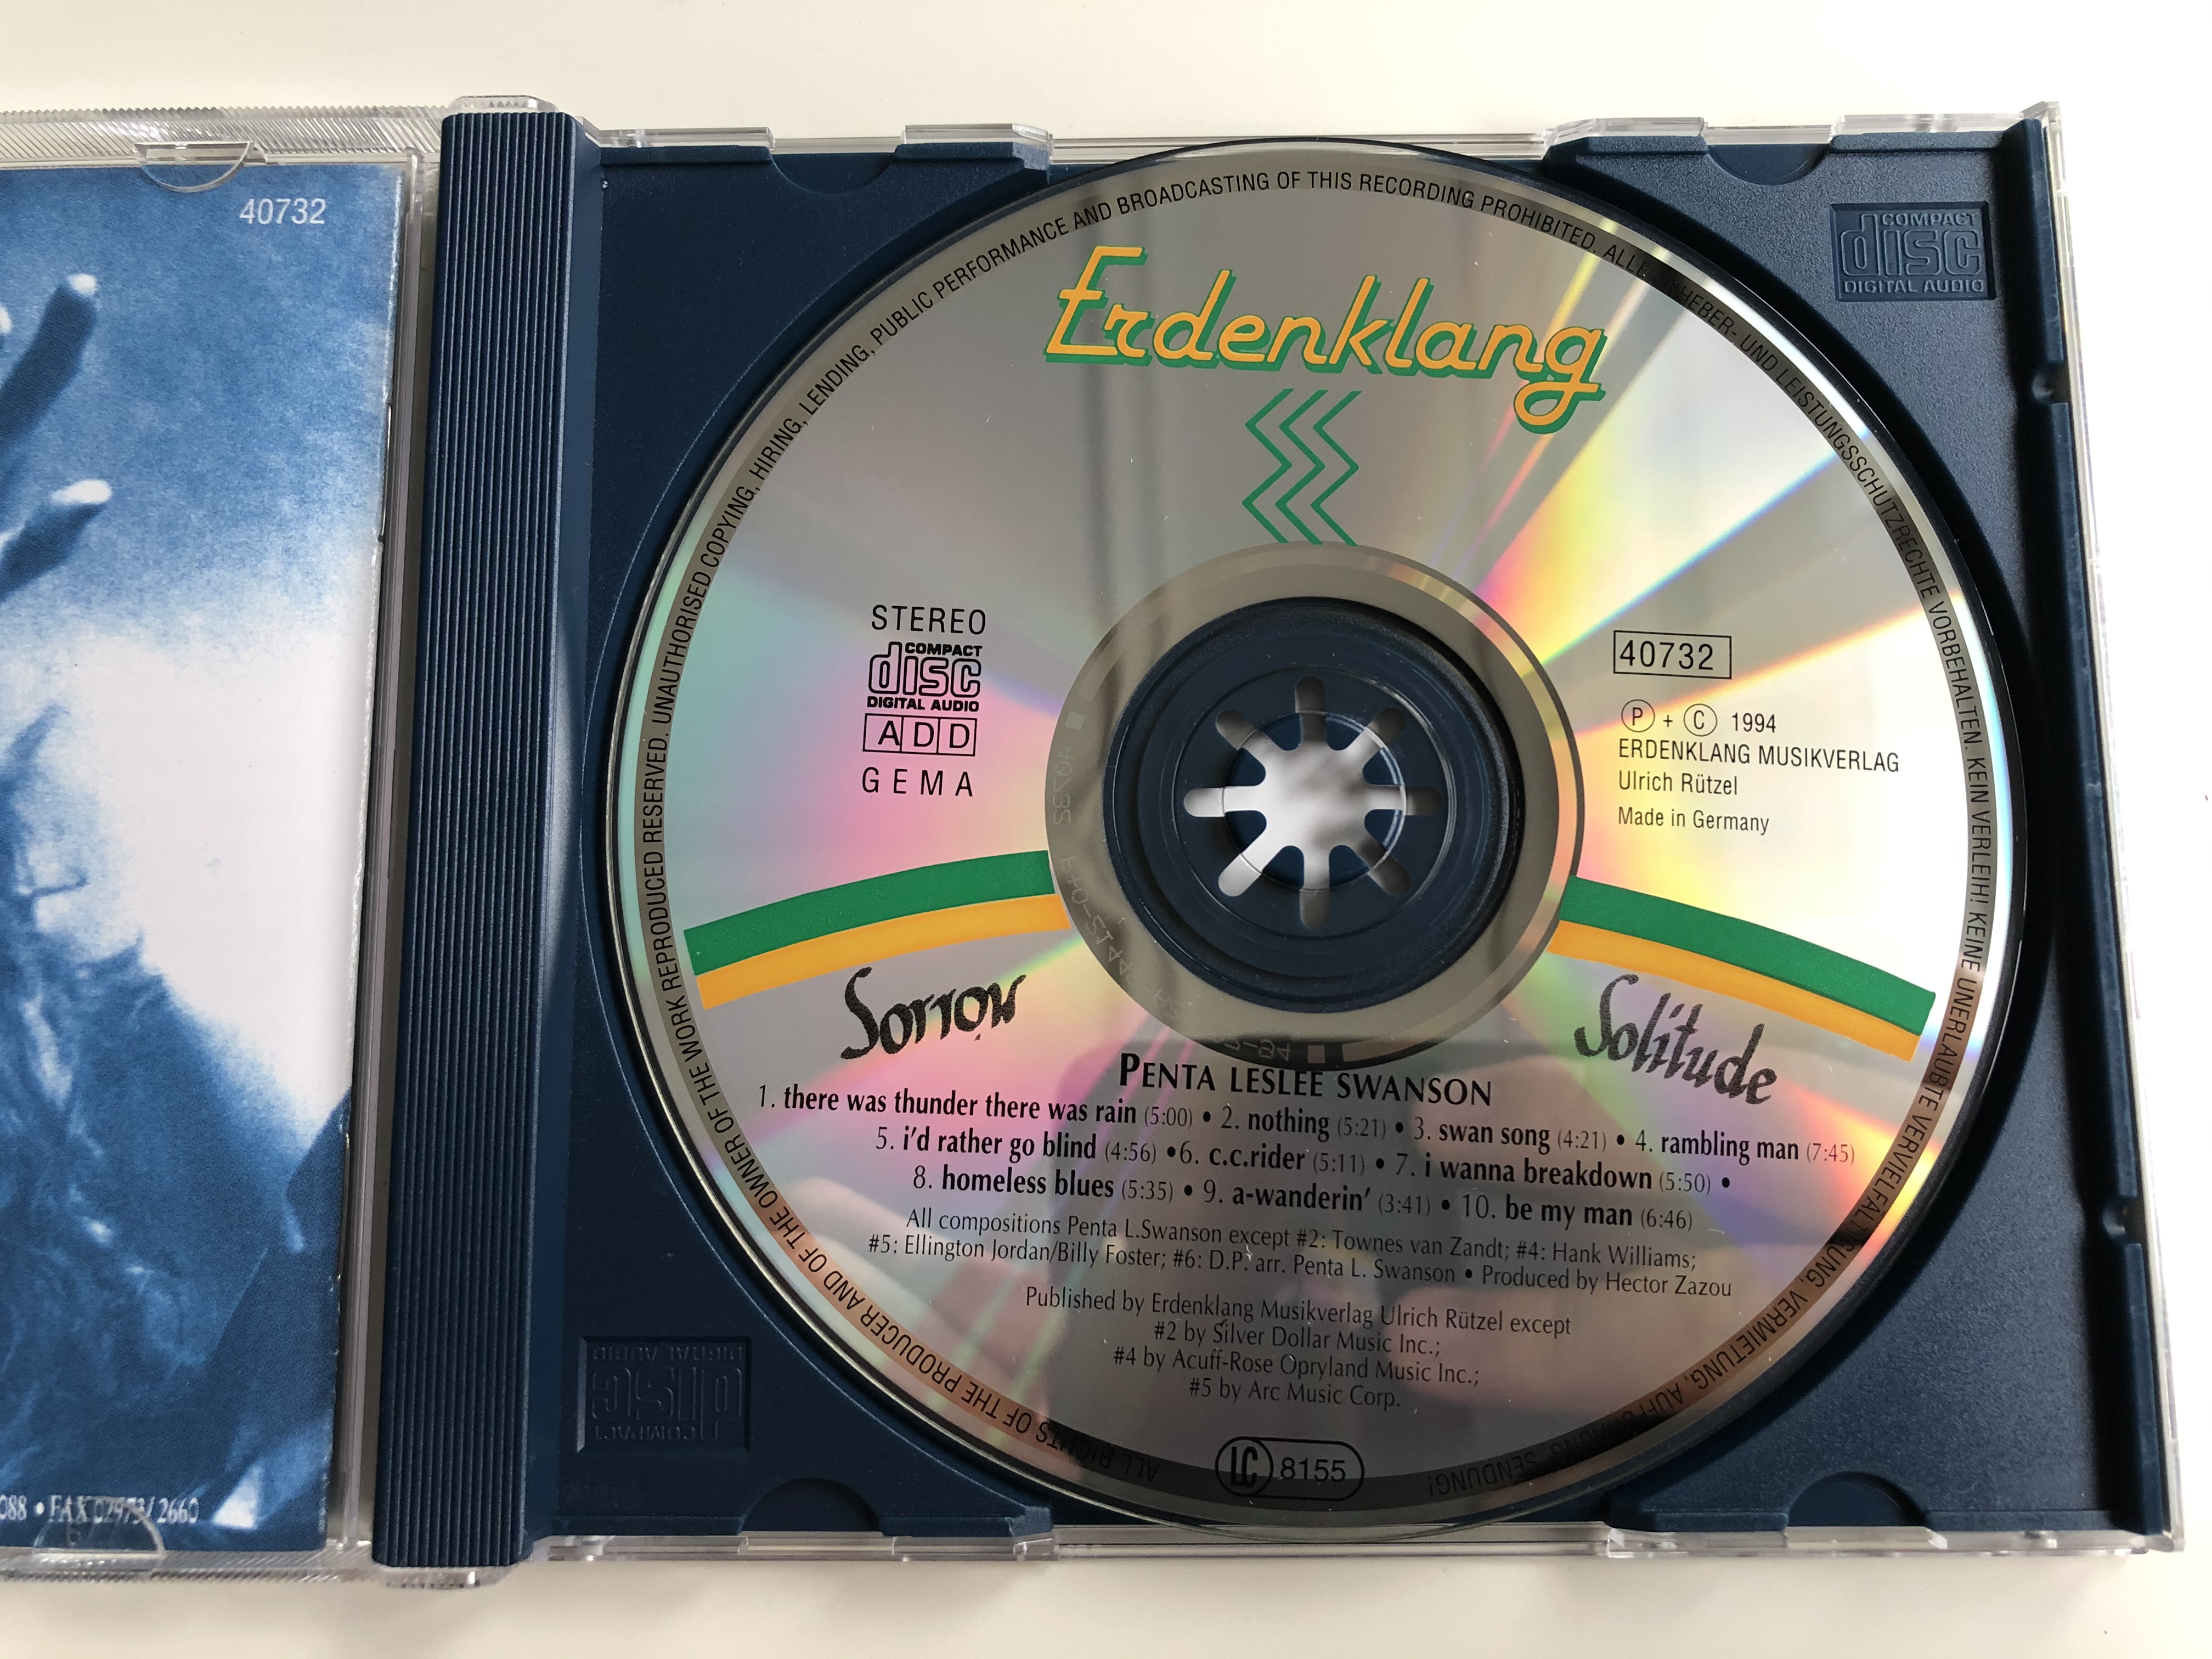 penta-leslee-swanson-sorrow-and-solitude-erdenklang-audio-cd-1994-stereo-40732-9-.jpg